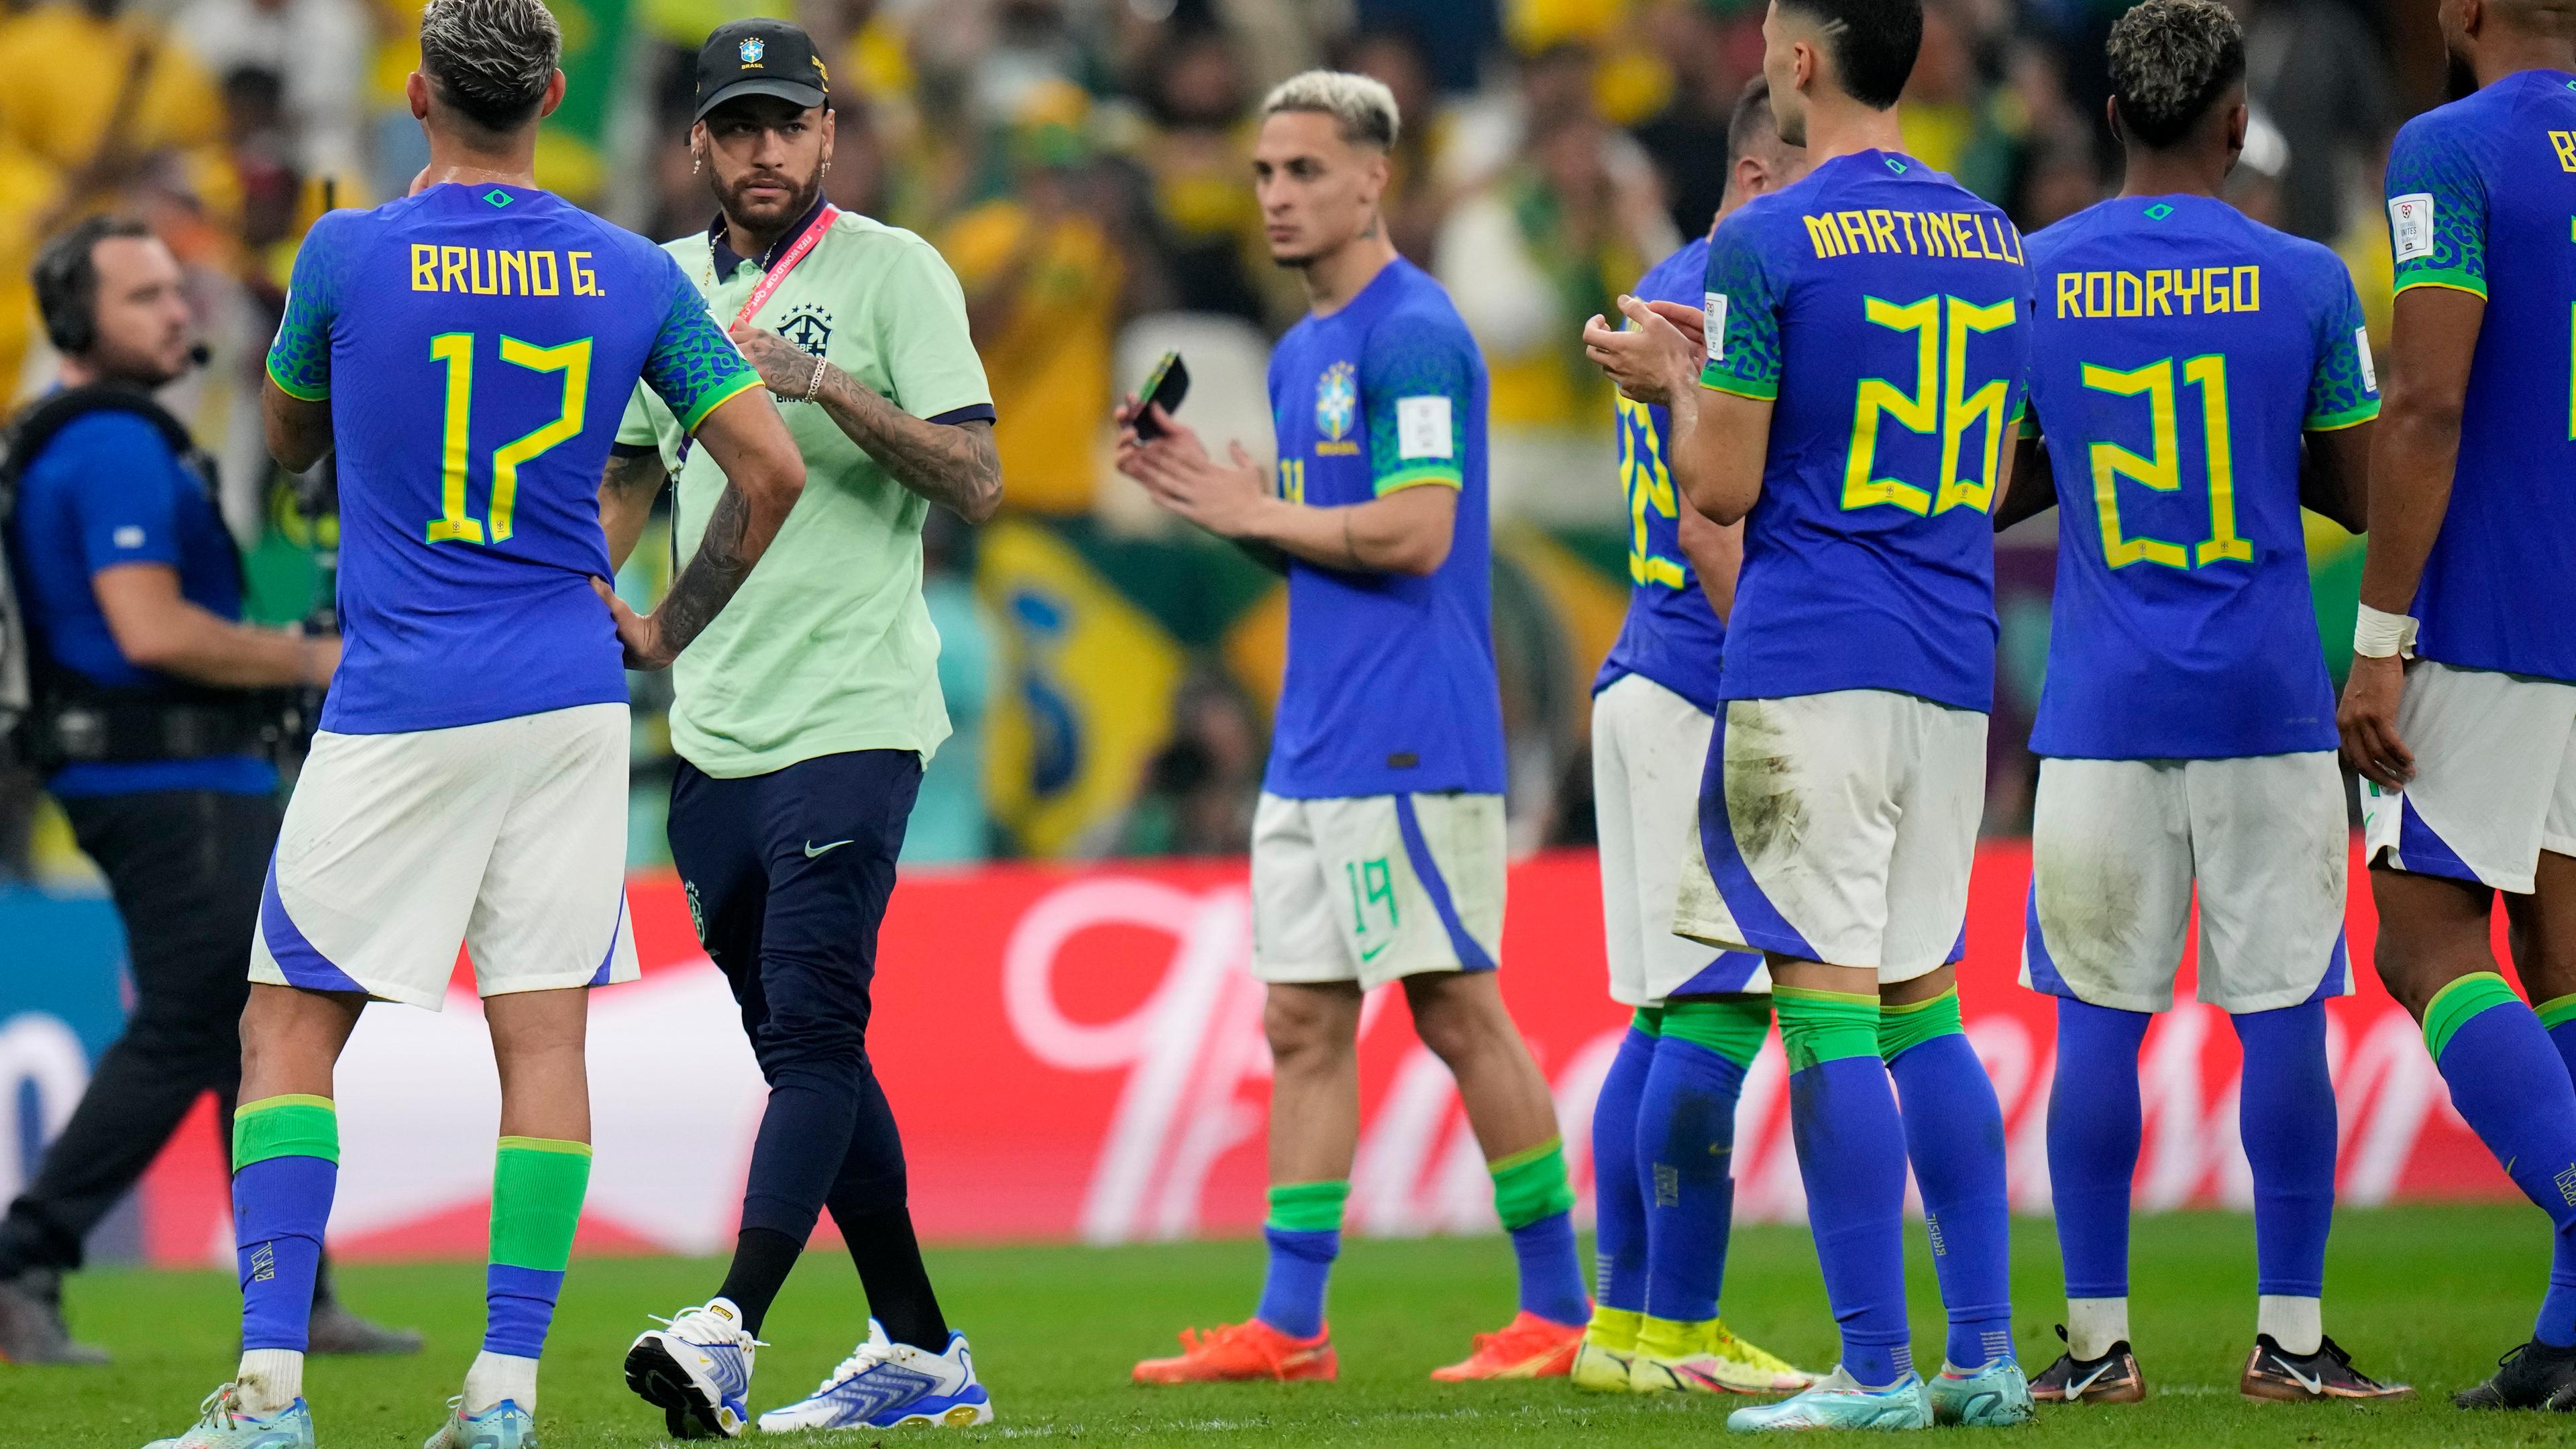 Katar, Lusail: Brasiliens Fußballer Neymar mit seinen Mannschaftskameraden nach dem Spiel gegen Kamerun.